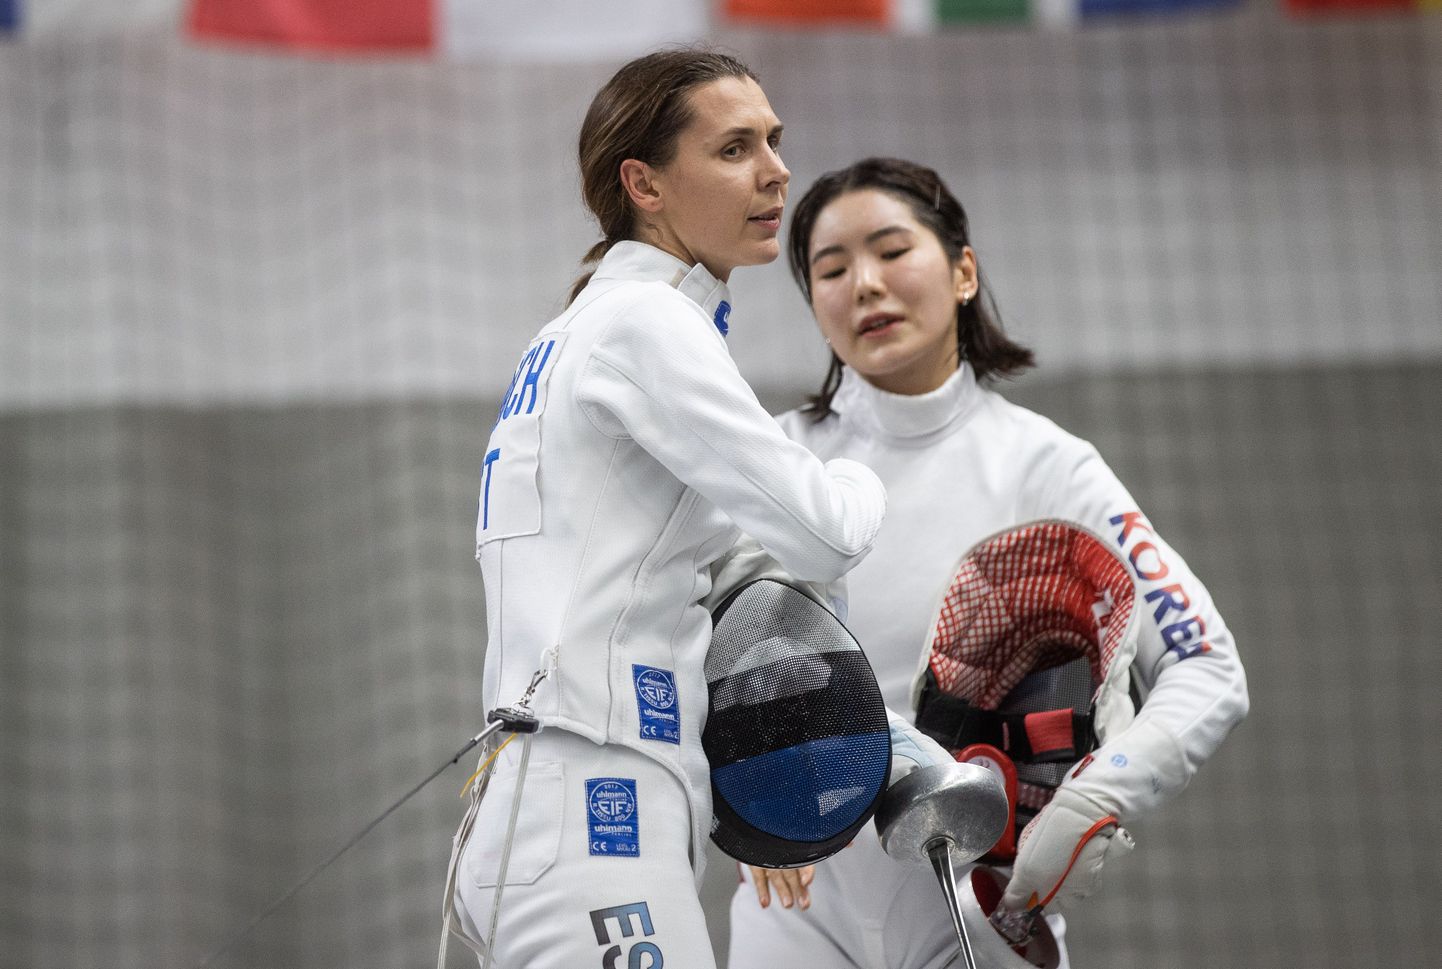 На турнире «Большой шлем» шпажистка Ирина Эмбрих (слева) проиграла действующей чемпионке мира кореянке Сере Сон.